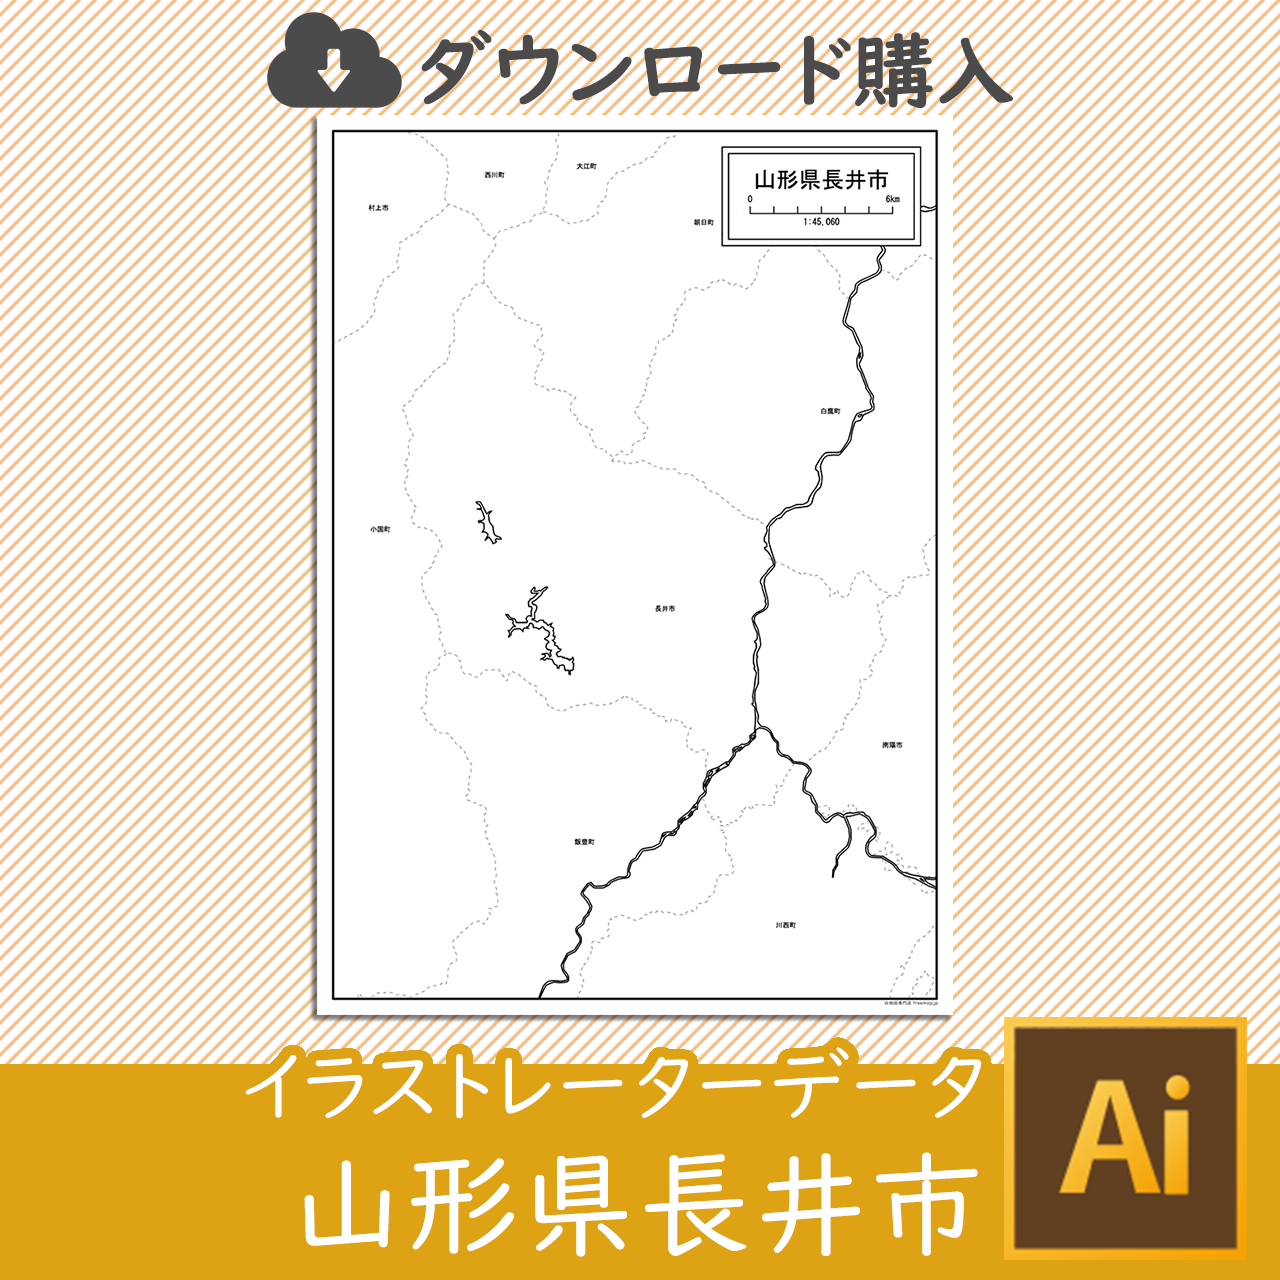 長井市のaiデータのサムネイル画像